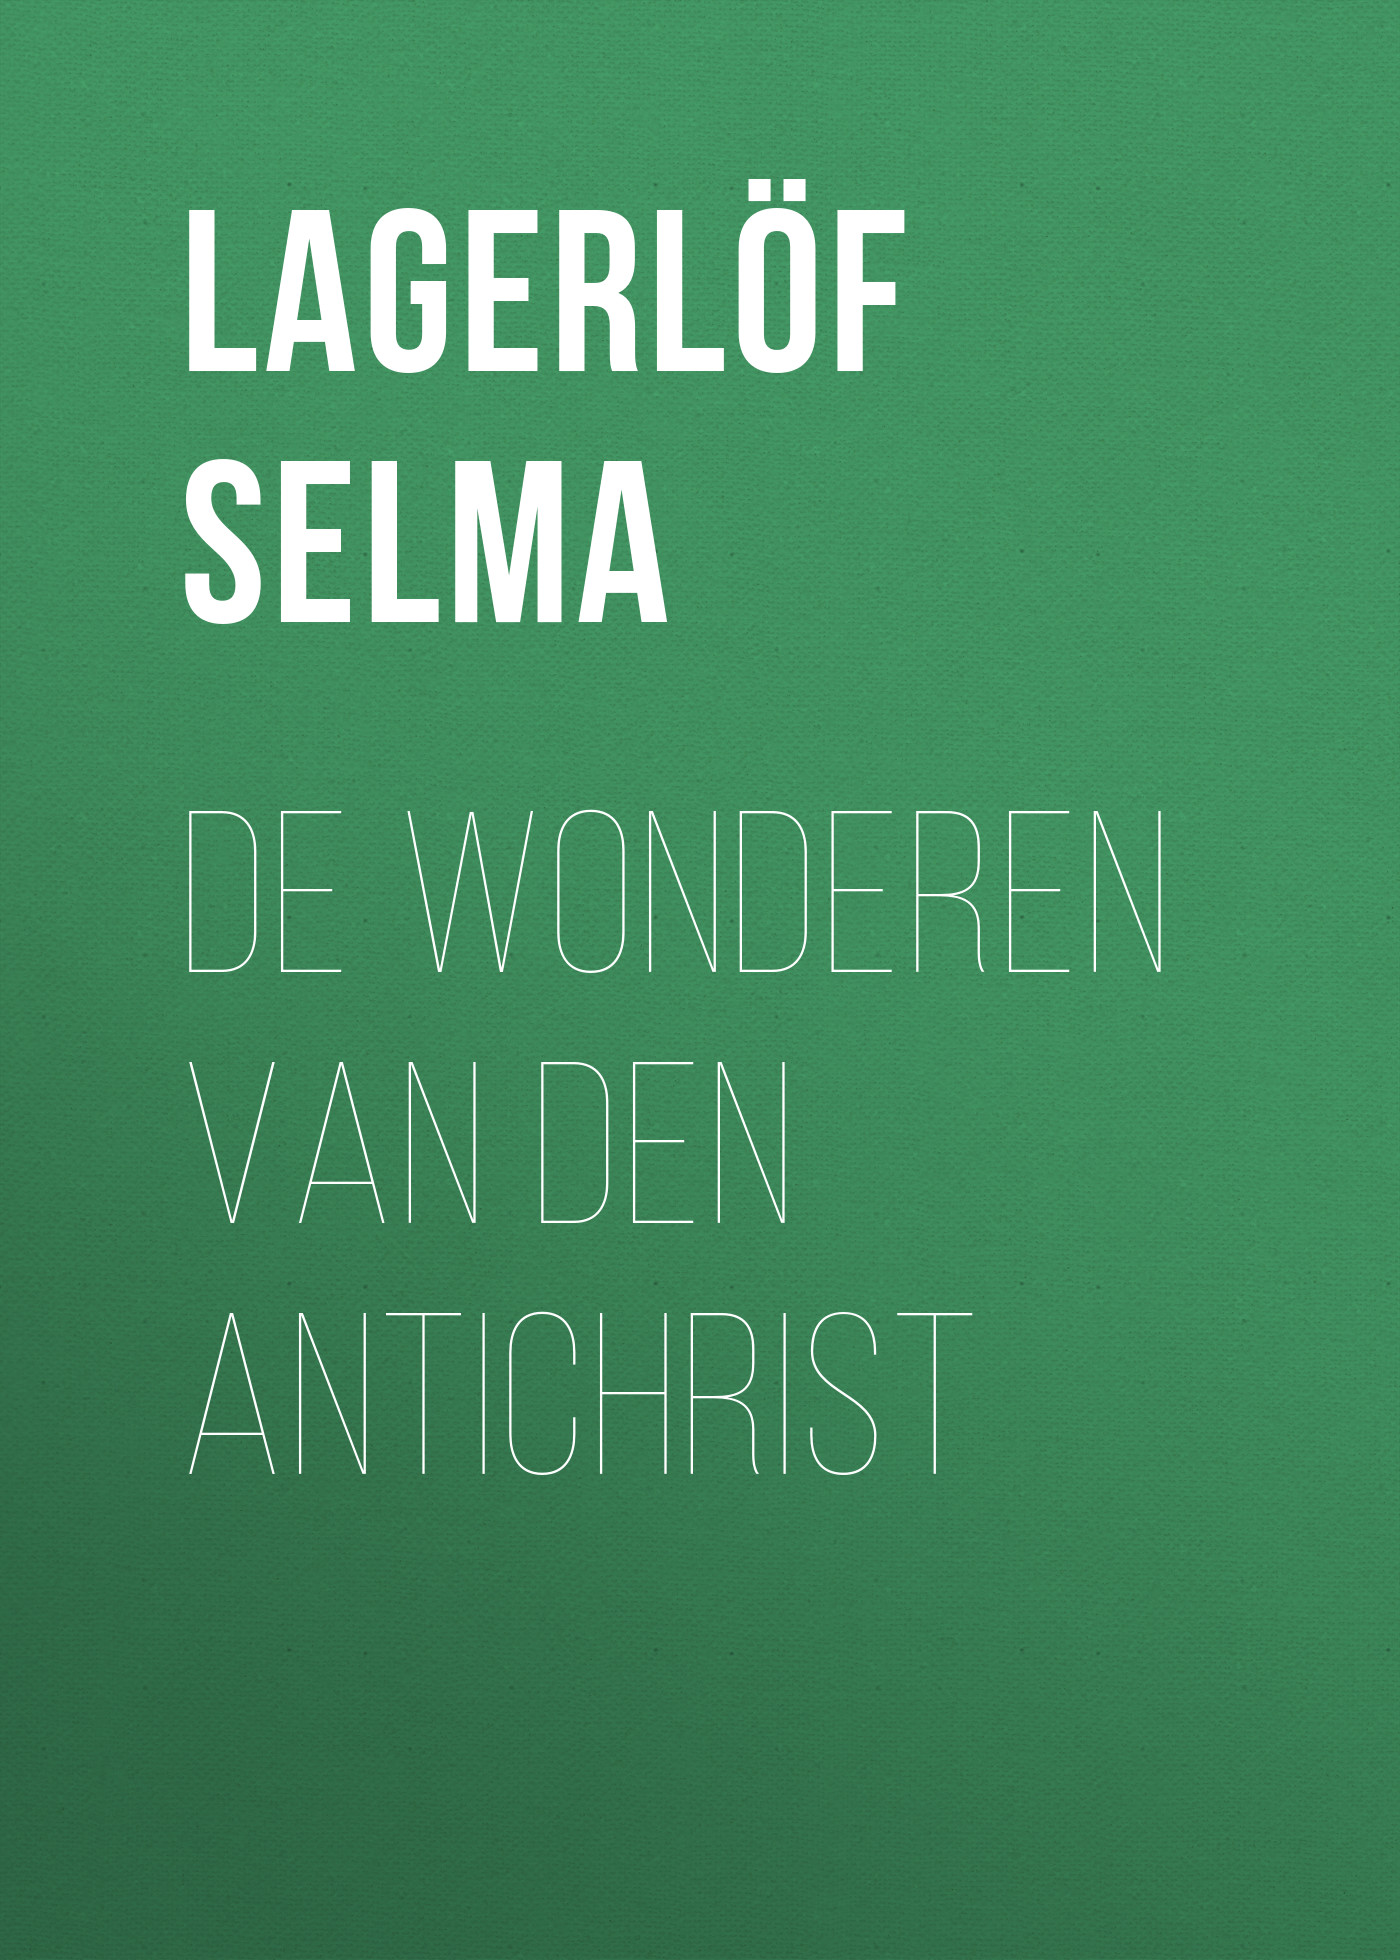 Книга De Wonderen van den Antichrist из серии , созданная Selma Lagerlöf, может относится к жанру Зарубежная старинная литература, Зарубежная классика. Стоимость электронной книги De Wonderen van den Antichrist с идентификатором 25230180 составляет 0 руб.